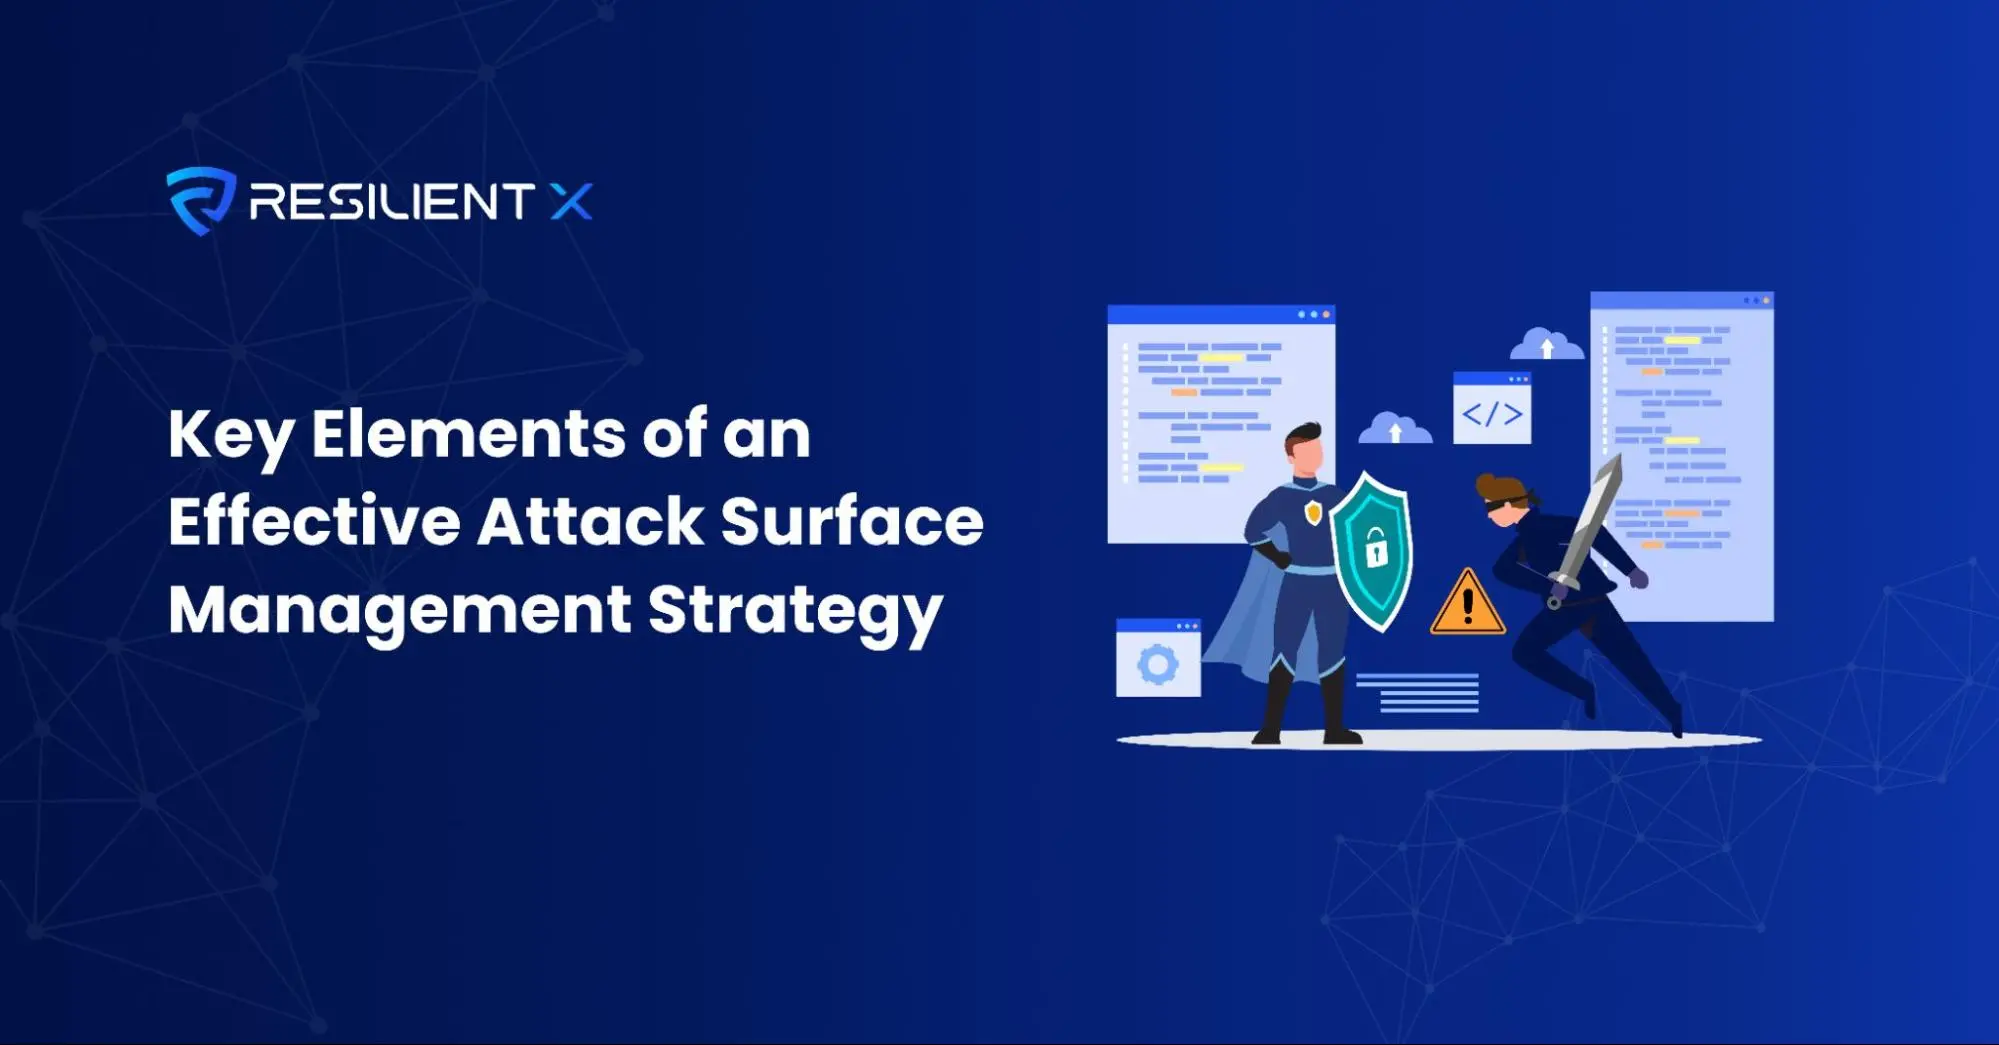 Elementi chiave di una strategia di gestione della superficie di attacco efficace